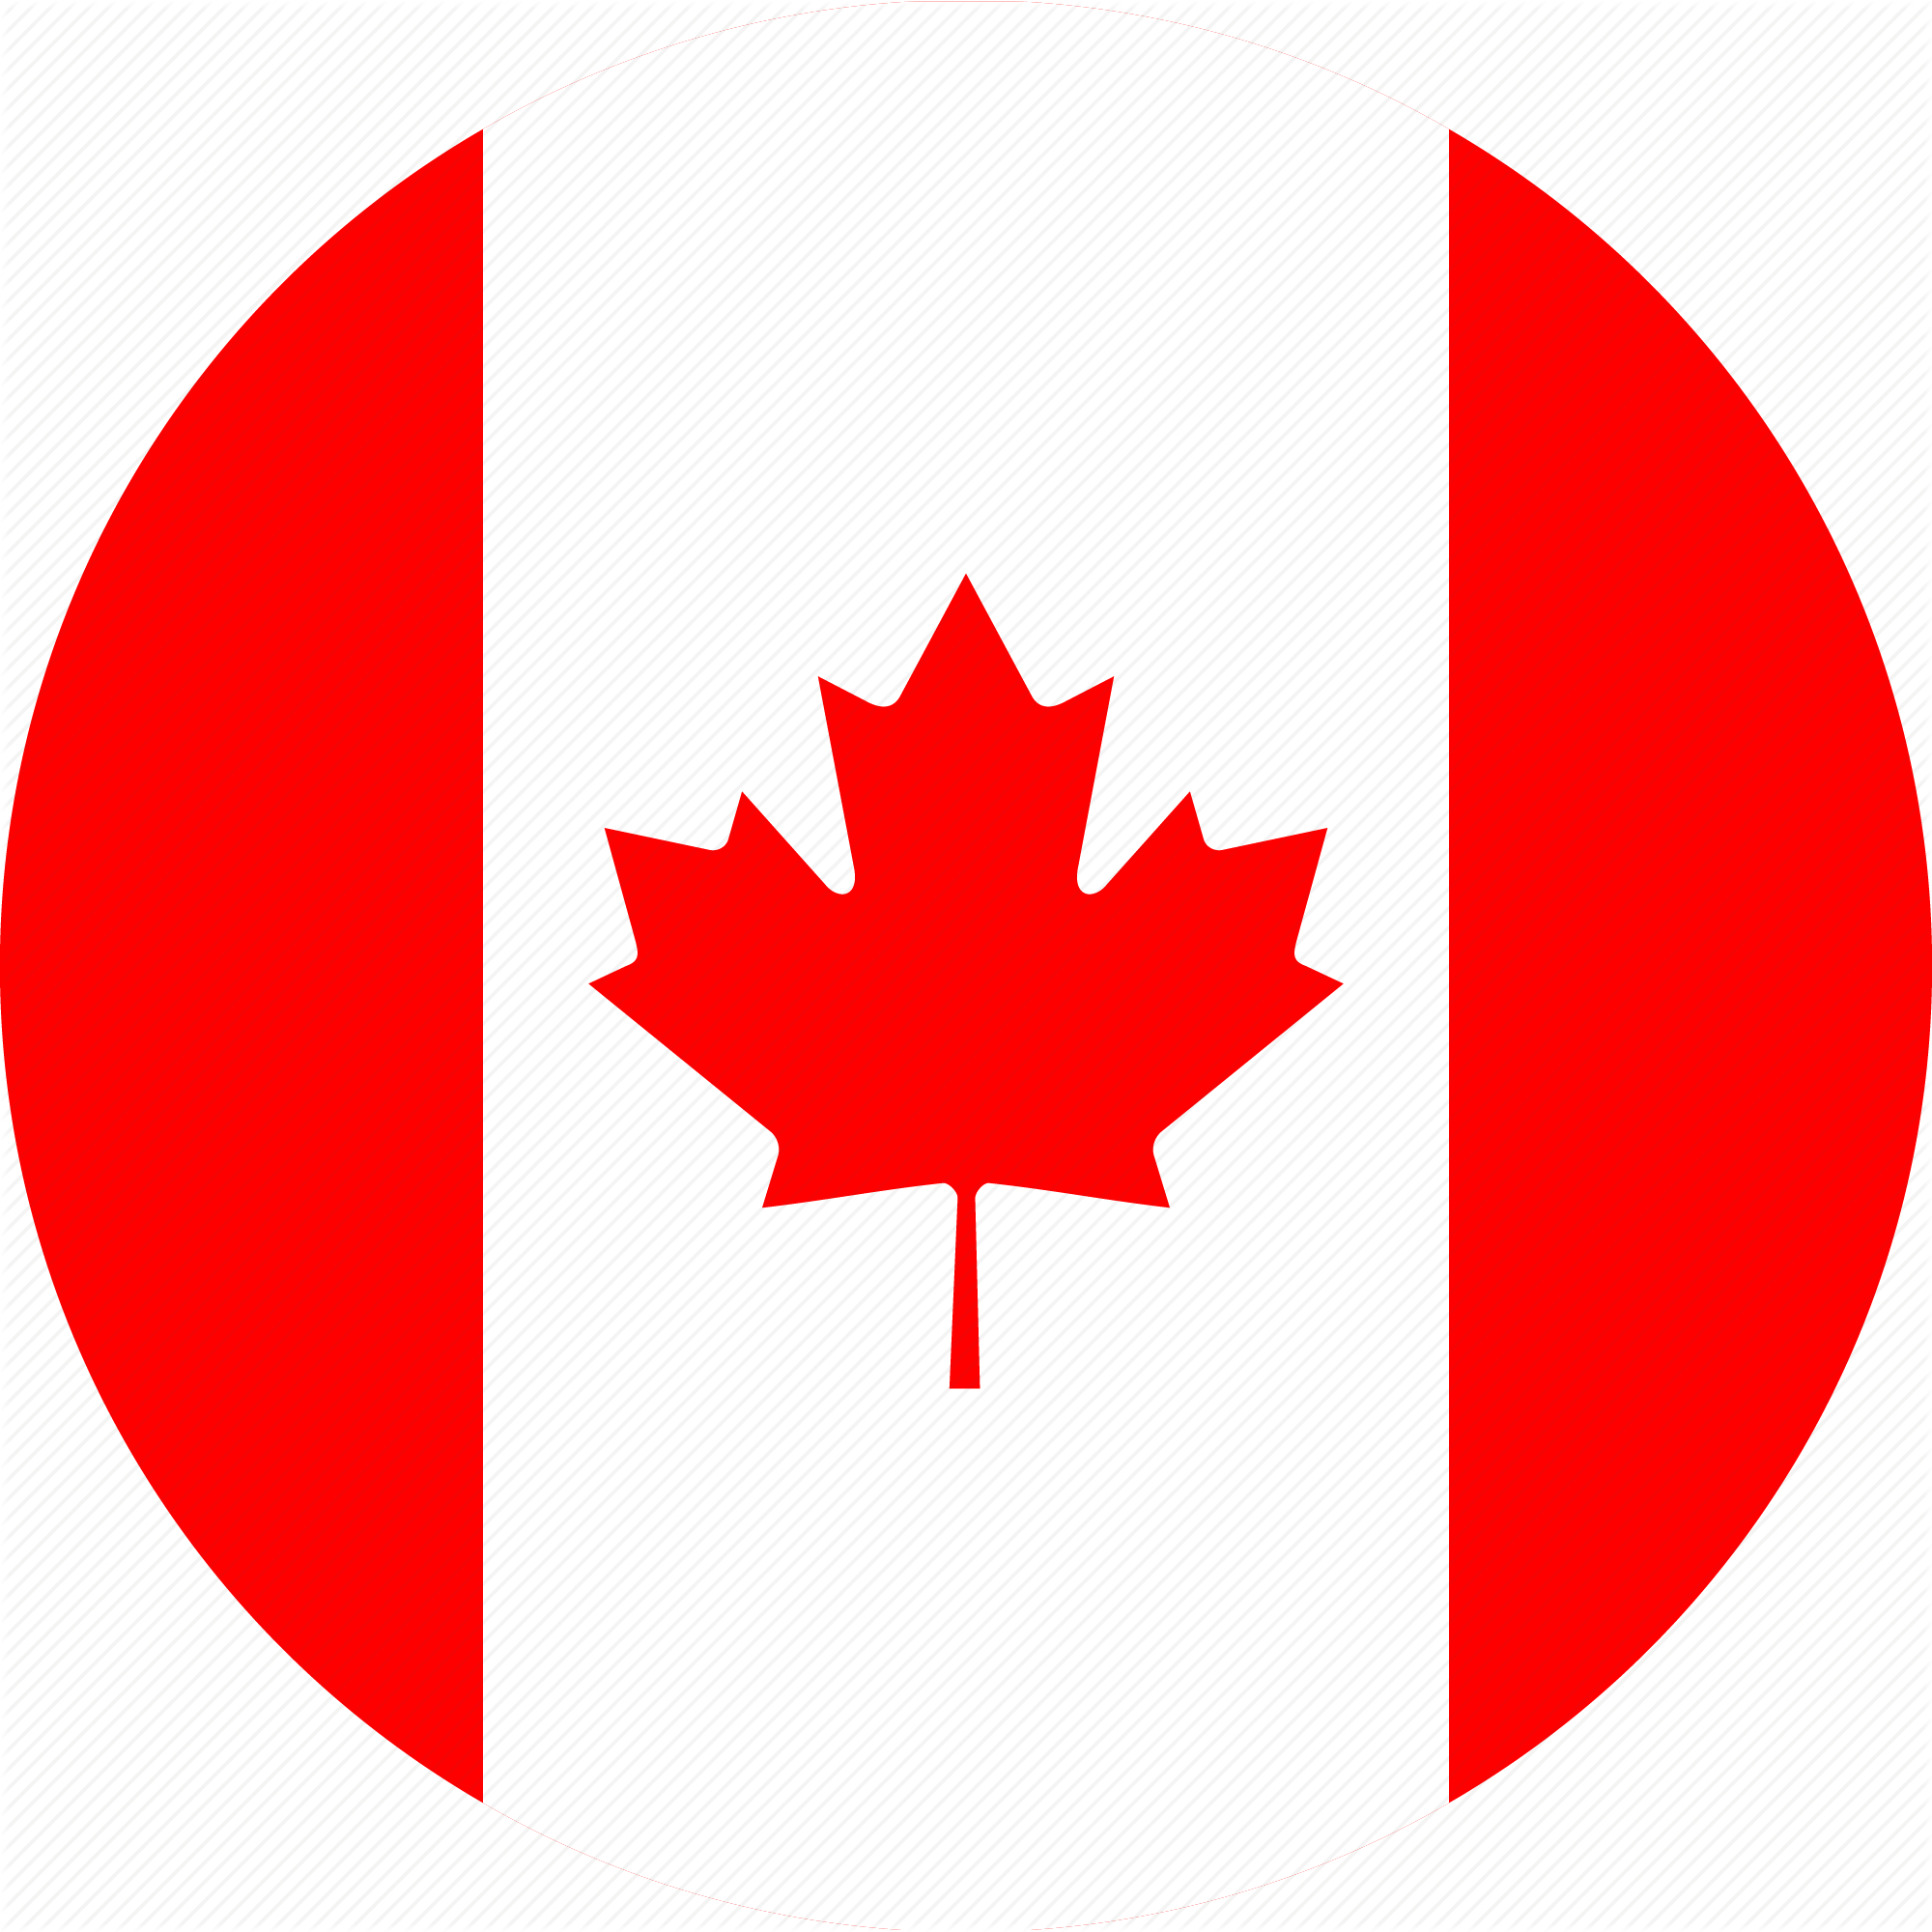 Каннада. Флаг Канада. Канада прапор. Флаг Канады в круге. Флаг Канады значок.